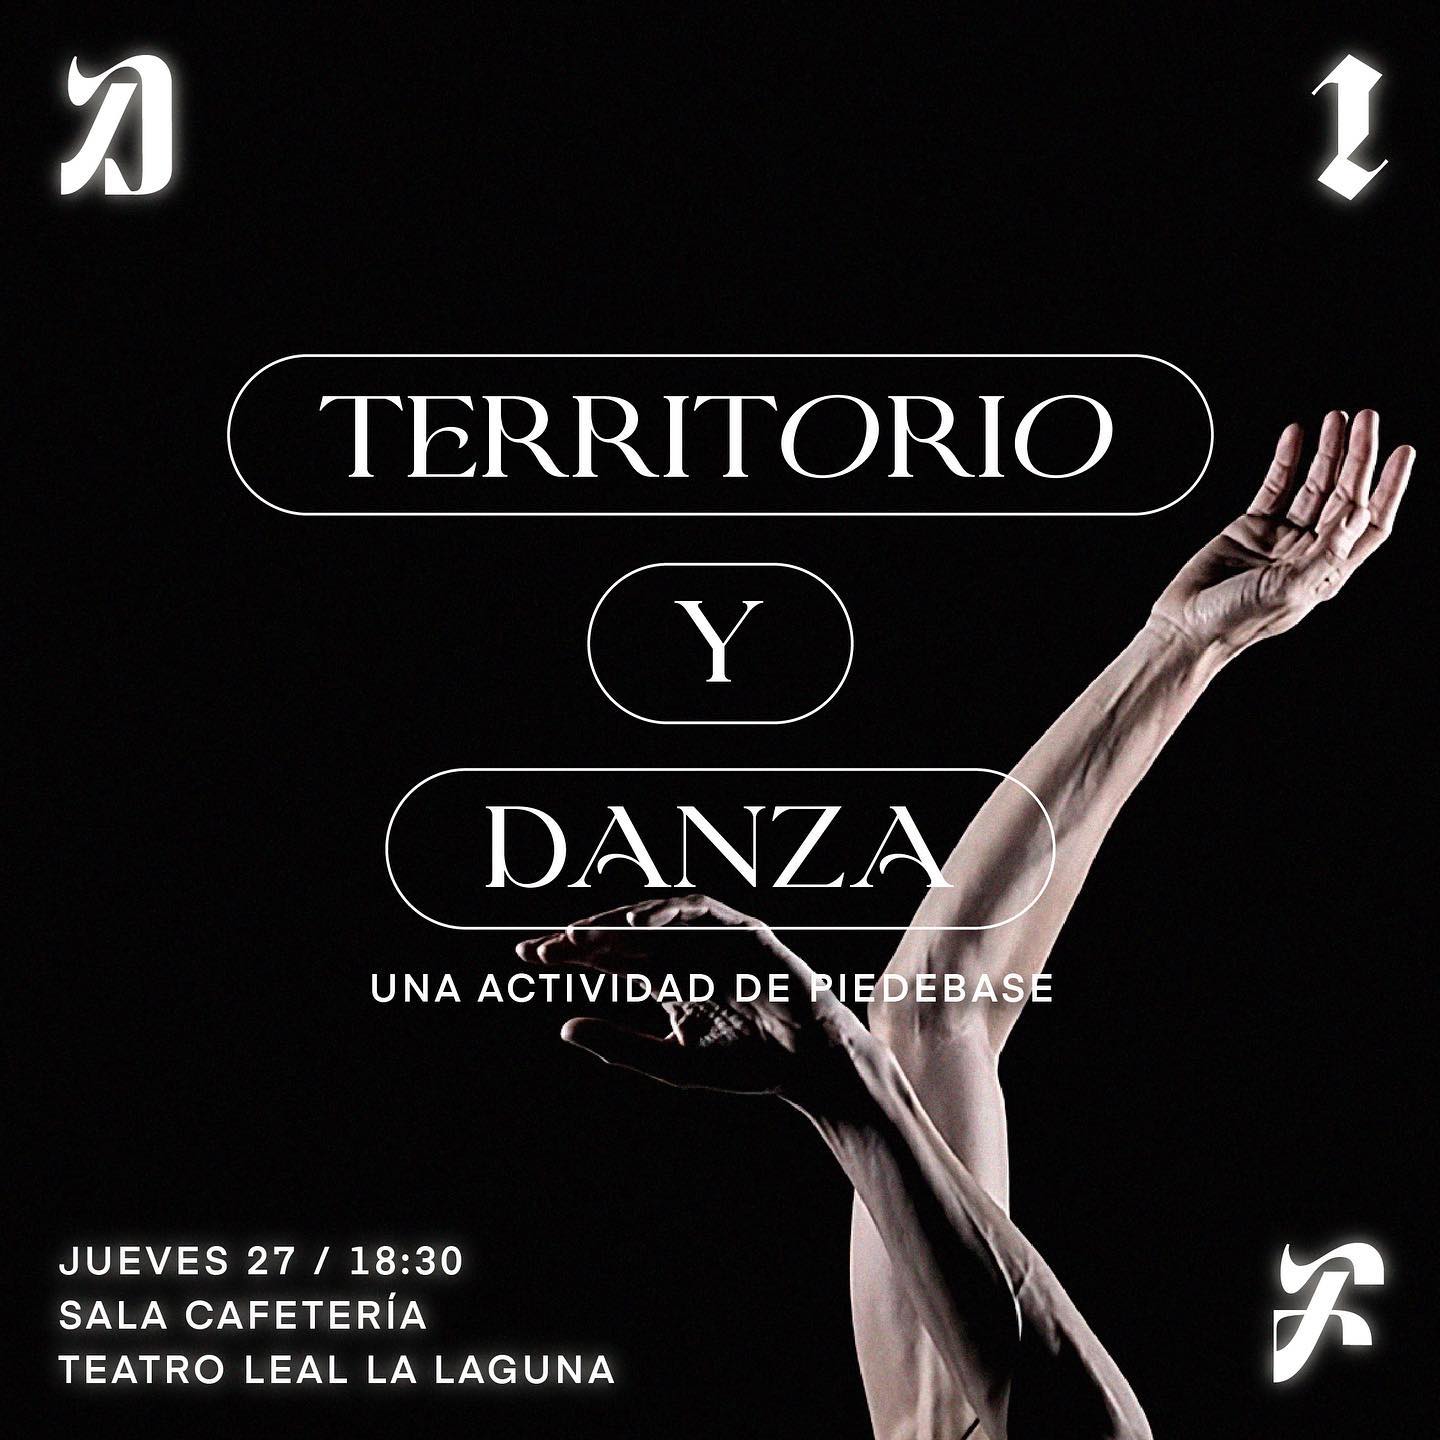 TERRITORIO Y DANZA / PIEDEBASE + DANCE INTERFACES 2023 Vibrant Matter
Jueves 27, 18.30h
Sala Cafetería / Teatro Leal La 